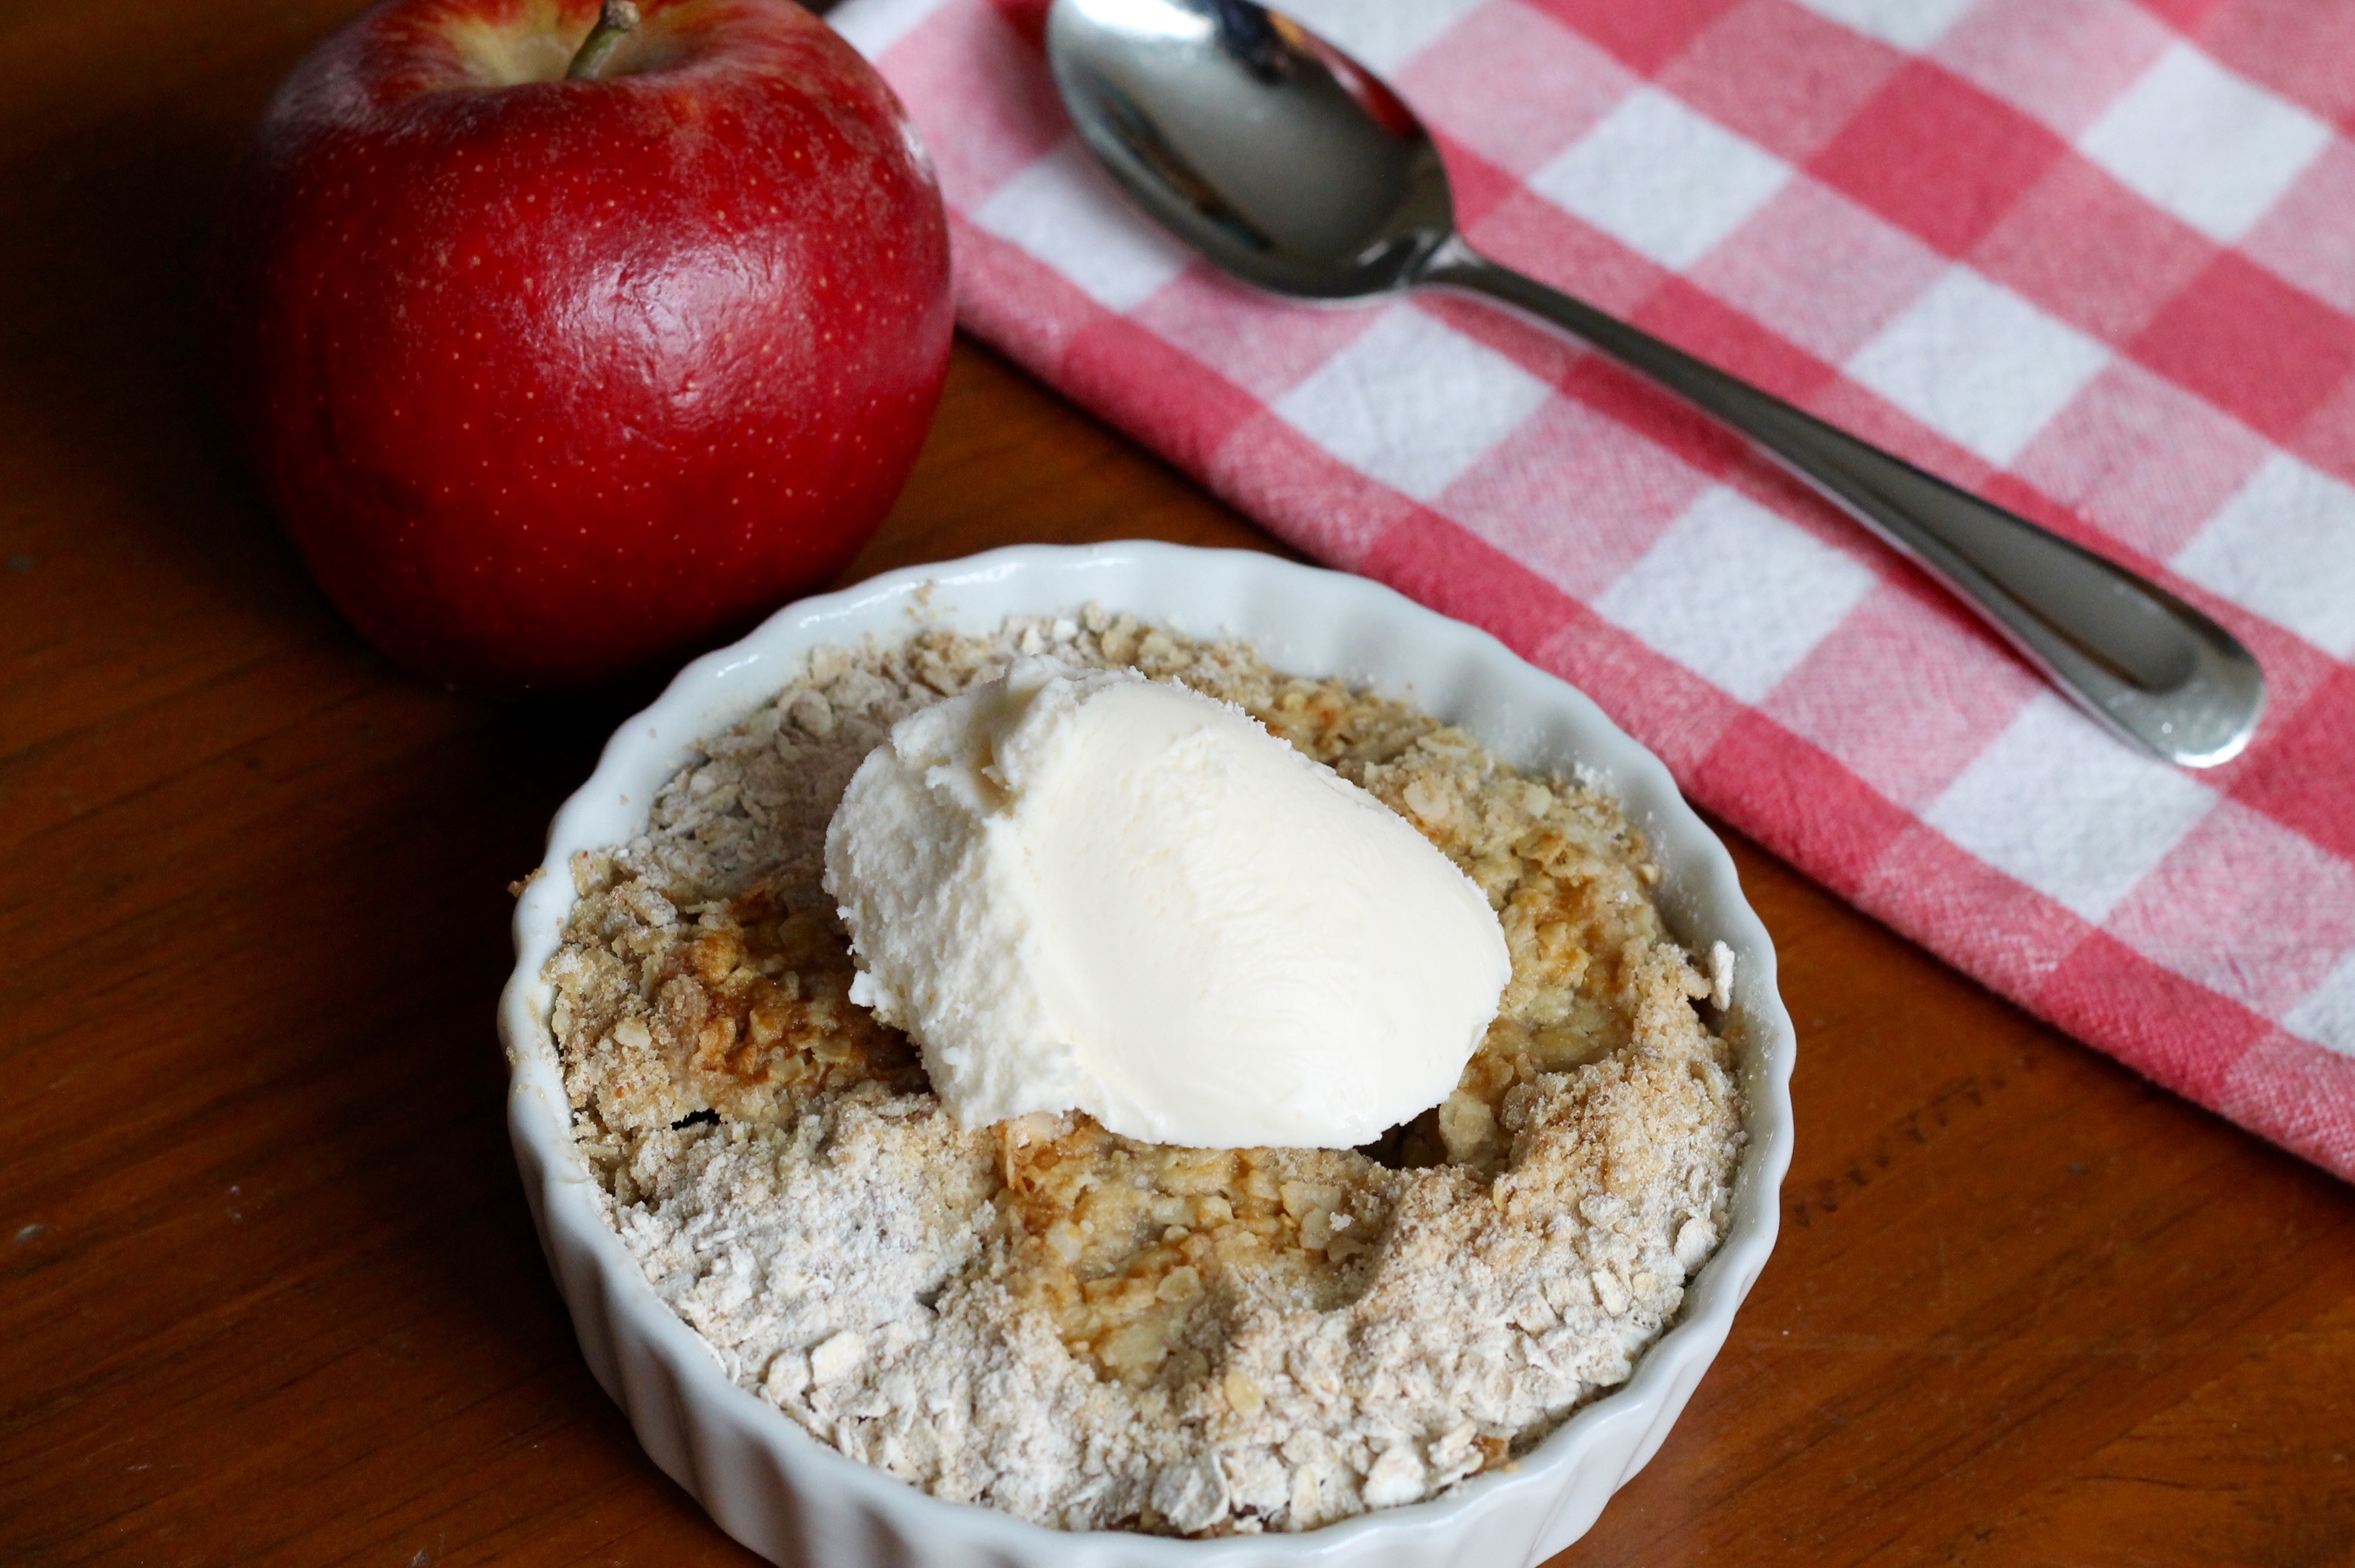 IMG 2487 - Sour Cream Apple Pie Recipe